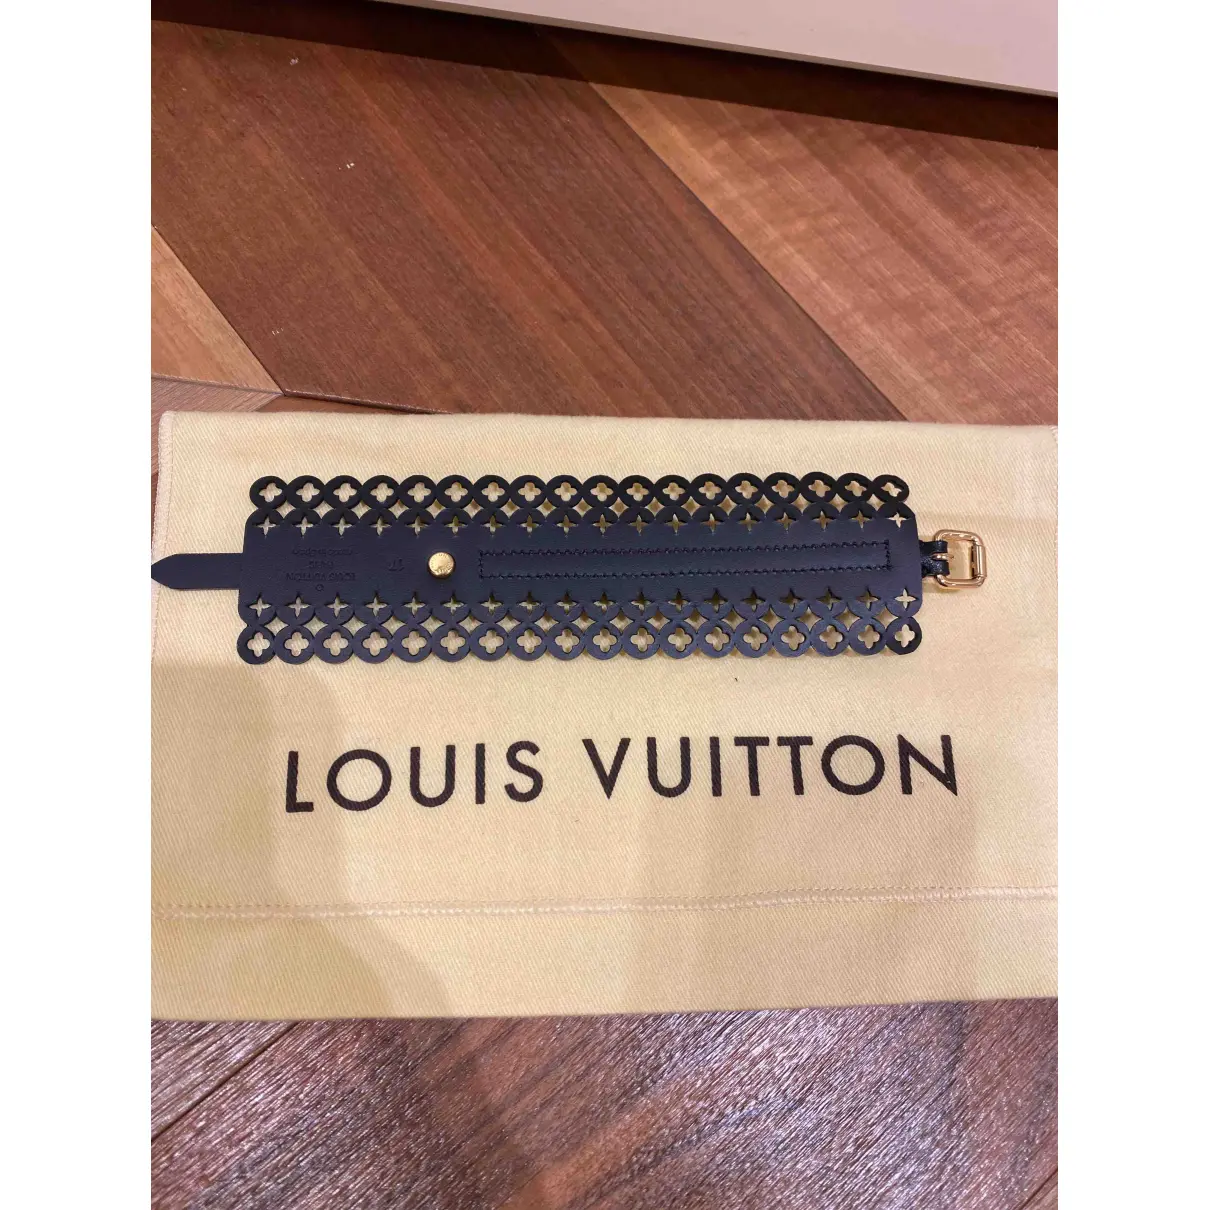 Buy Louis Vuitton Leather bracelet online